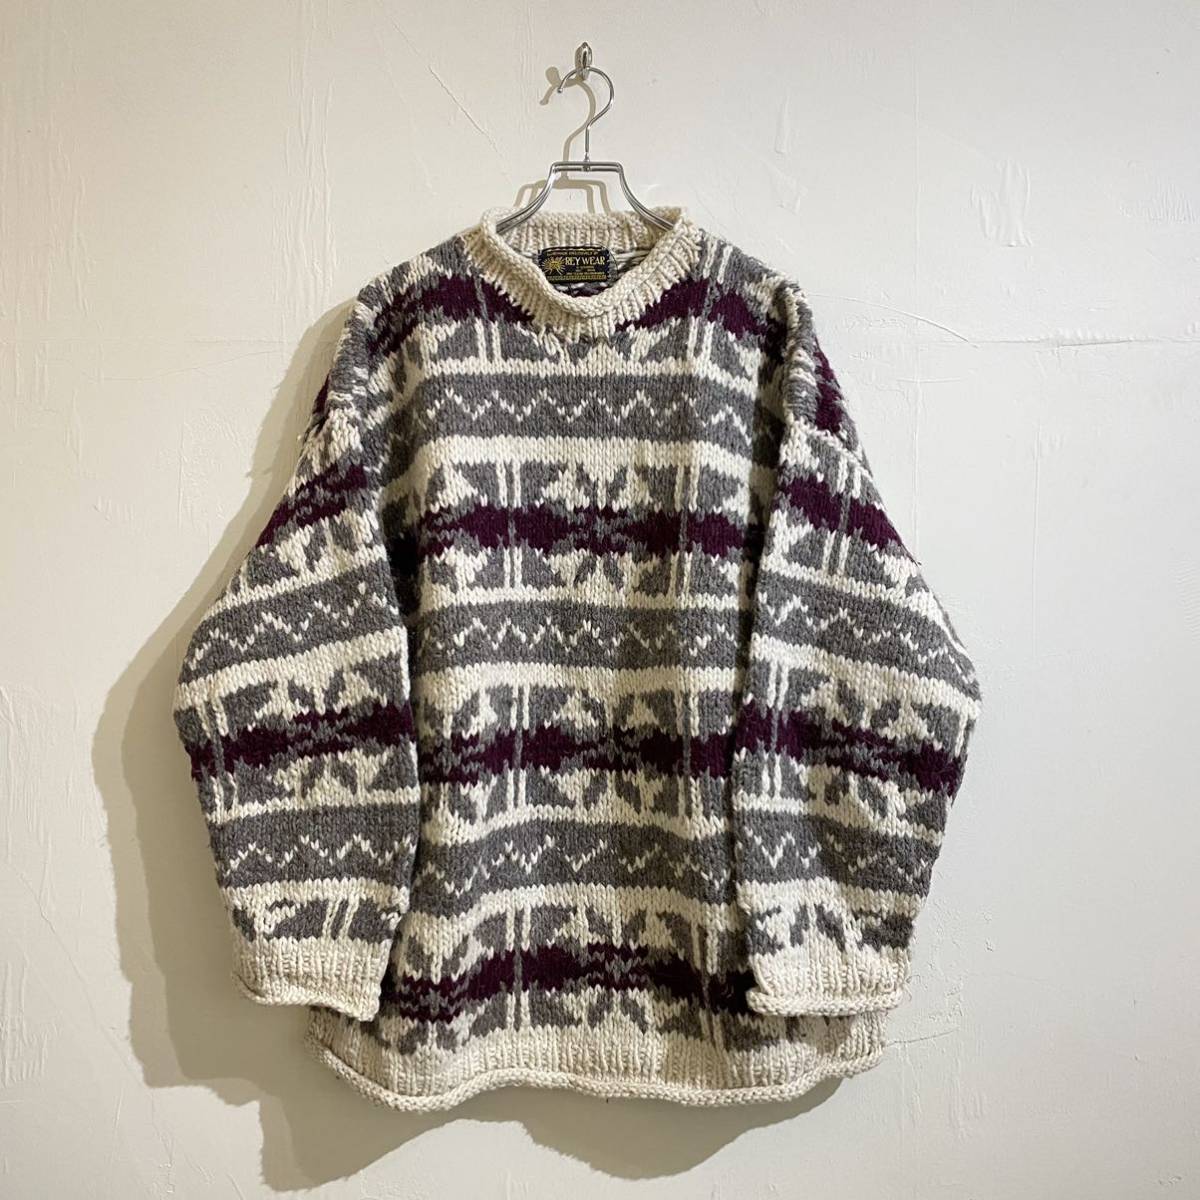 vintage Ecuador wool heavy sweater 古着 ビンテージ ニットセーター ウールセーター ヘビーセーター エクアドルニット 60s 70s 柄ニット